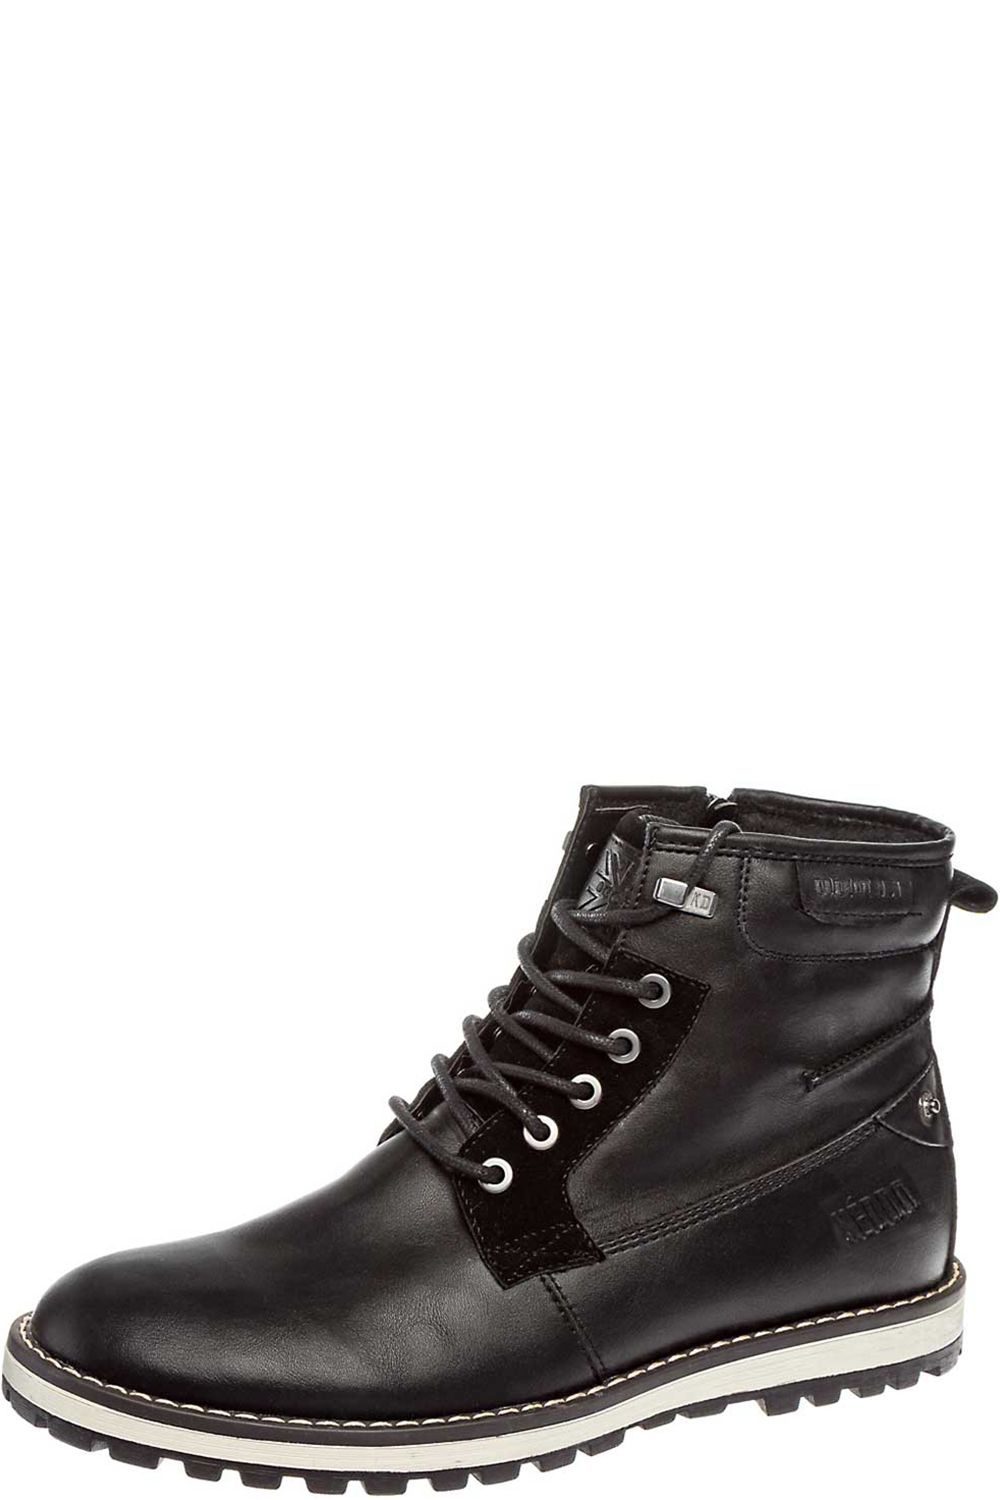 Ботинки Keddo, размер 39, цвет черный - фото 1